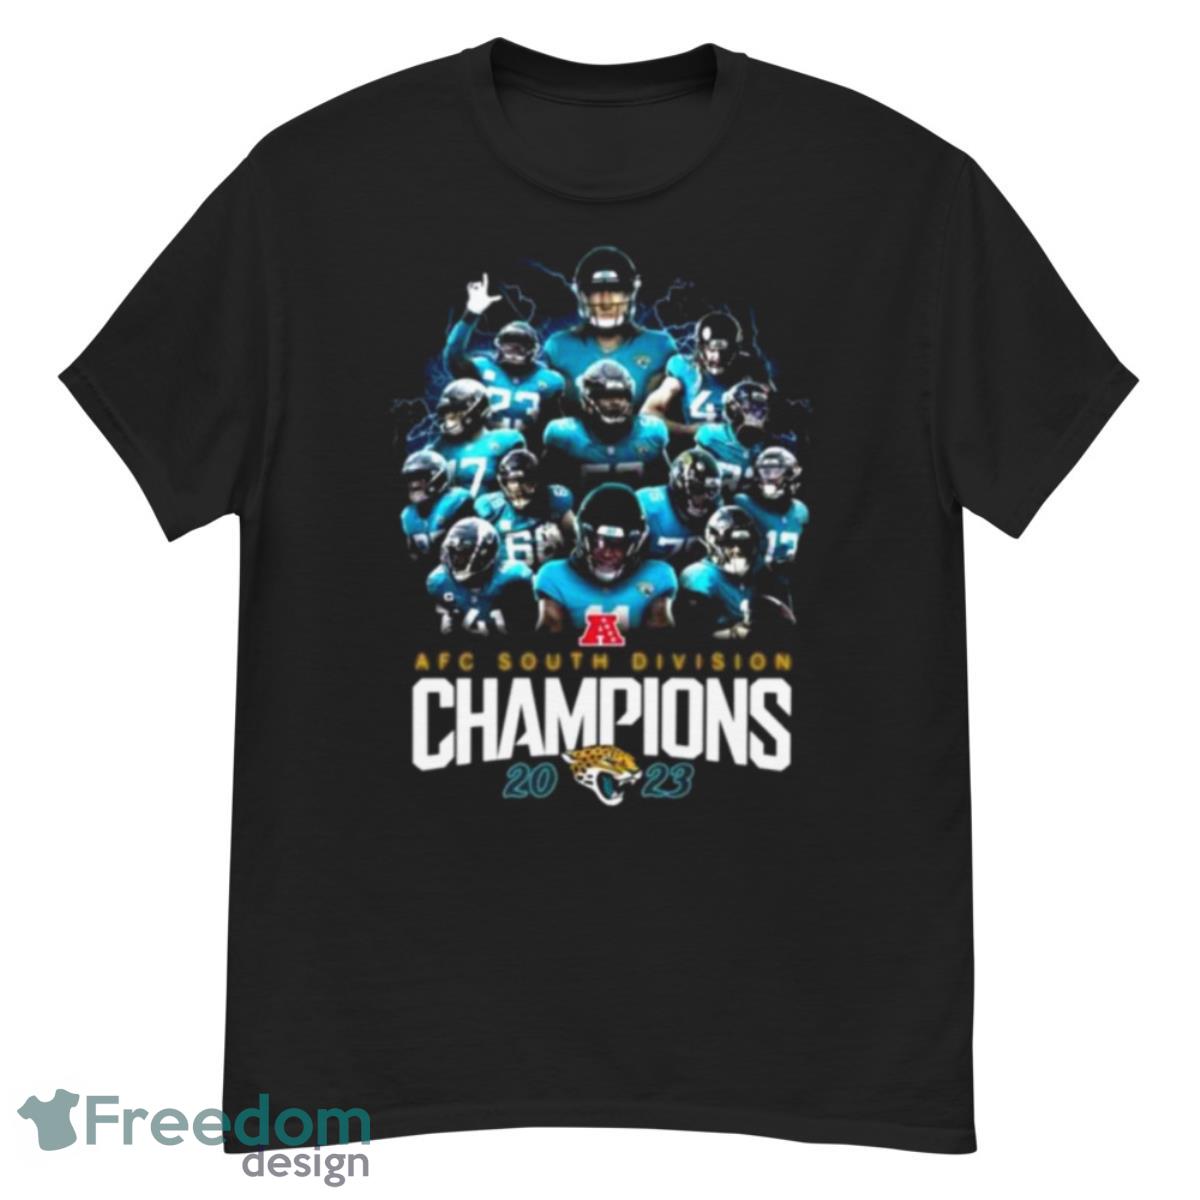 Jacksonville Jaguars AFC South Division Champions 2023 shirt - G500 Men’s Classic T-Shirt